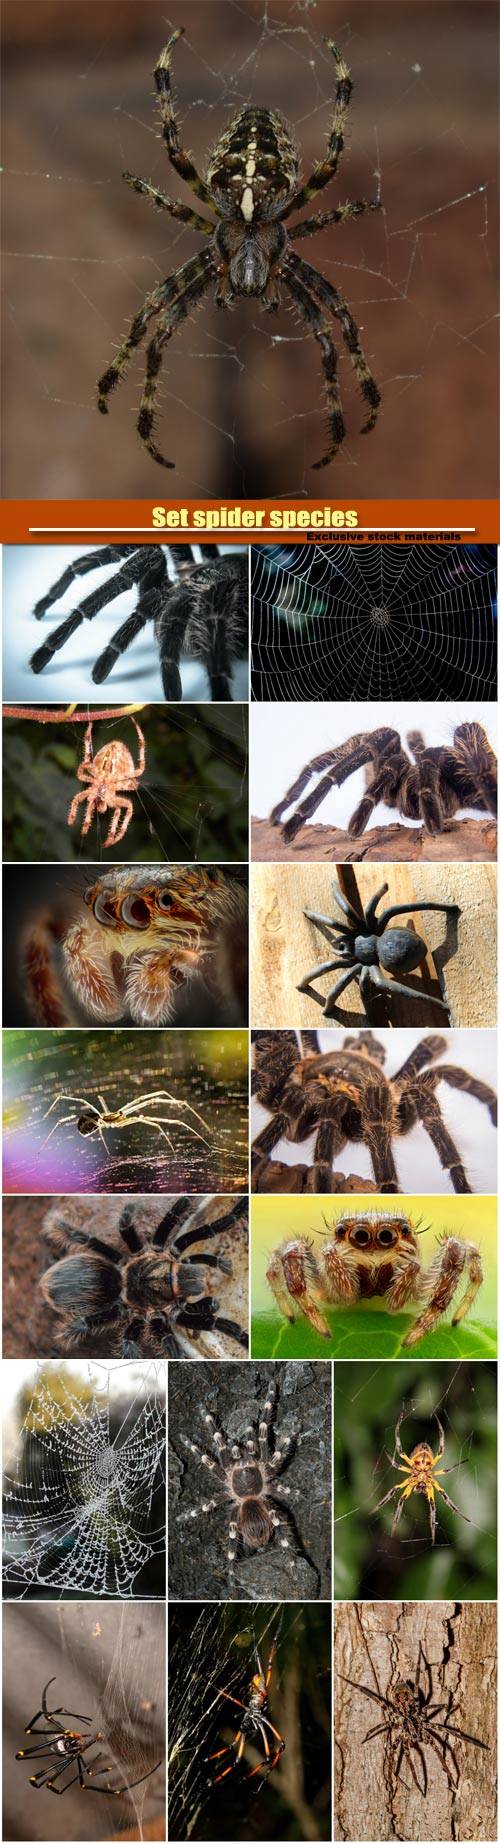 Set spider species